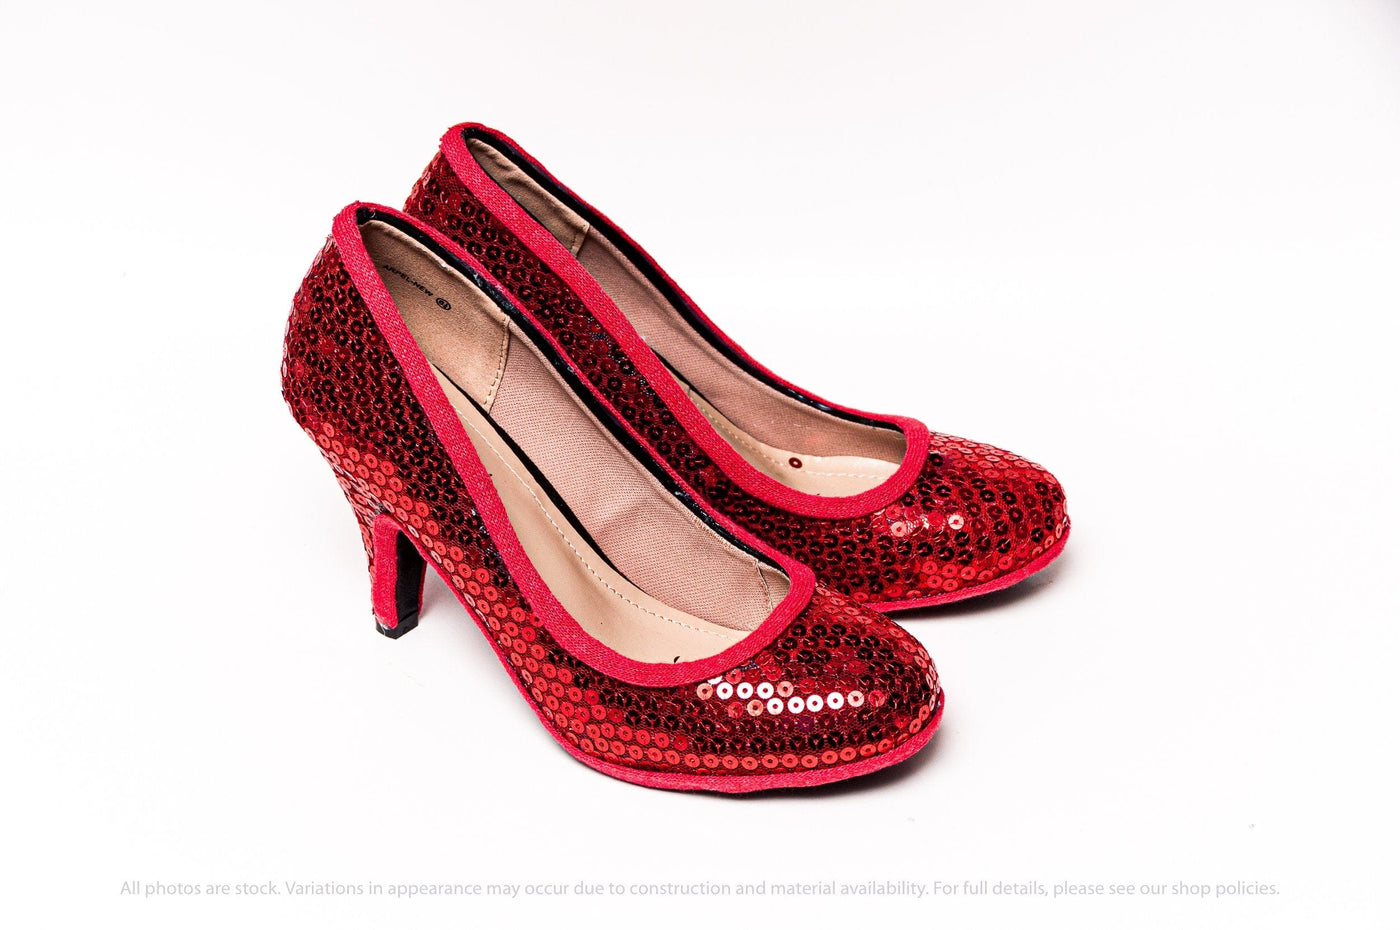 Sequin: Heels Red Sequin 3 Inch High Heels by Princess Pumps